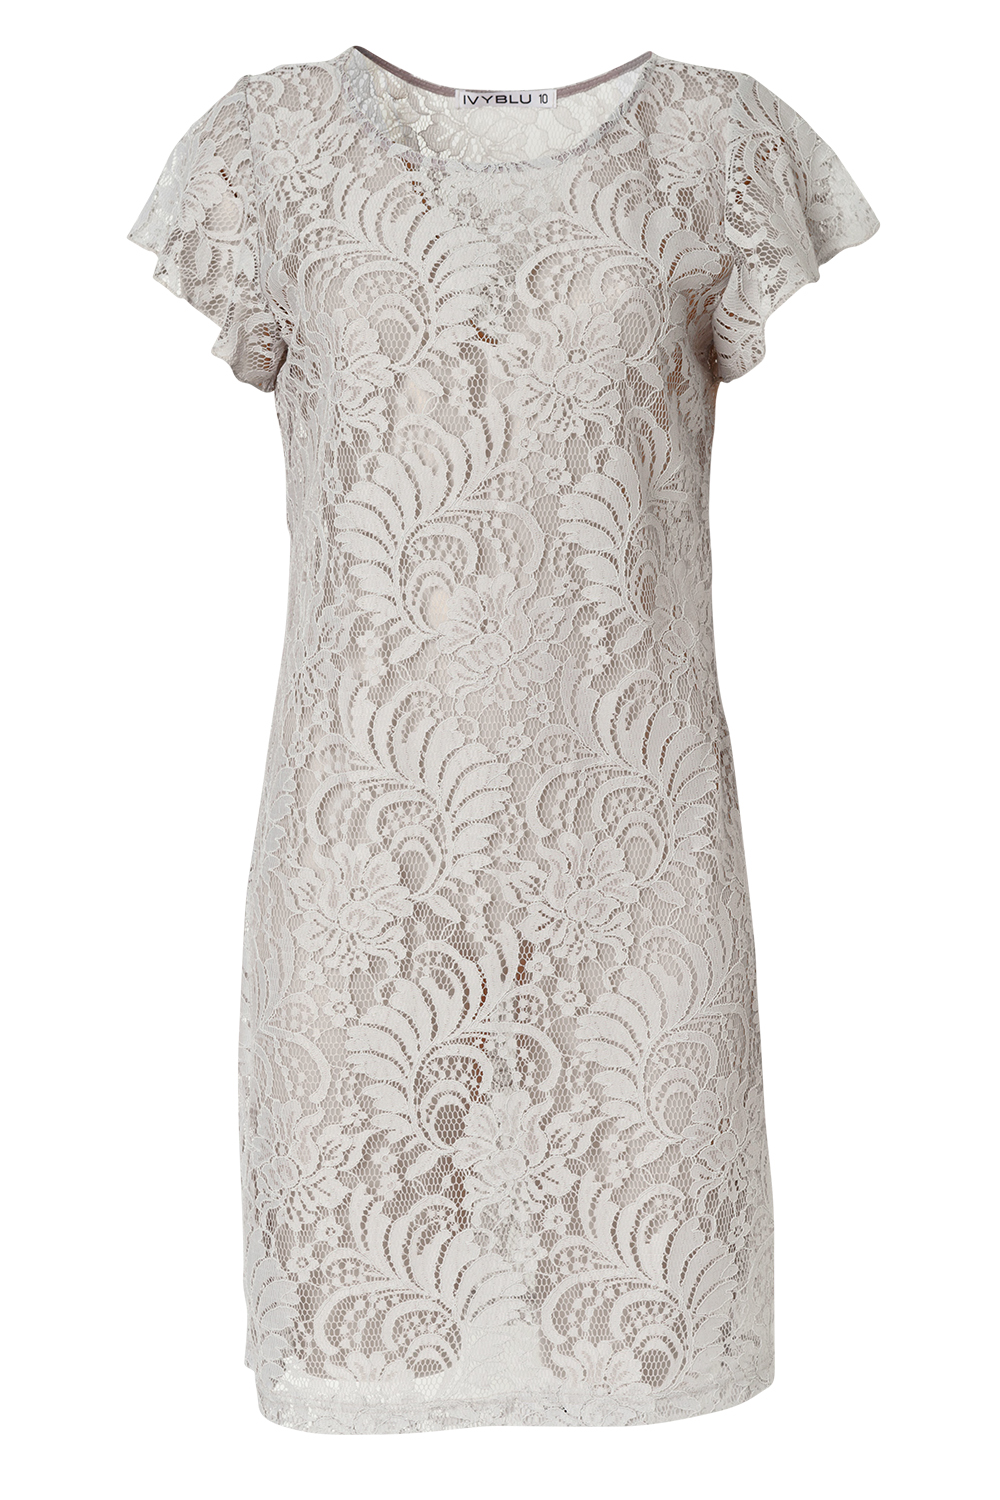 Dress, $179, by Ivy Blu.